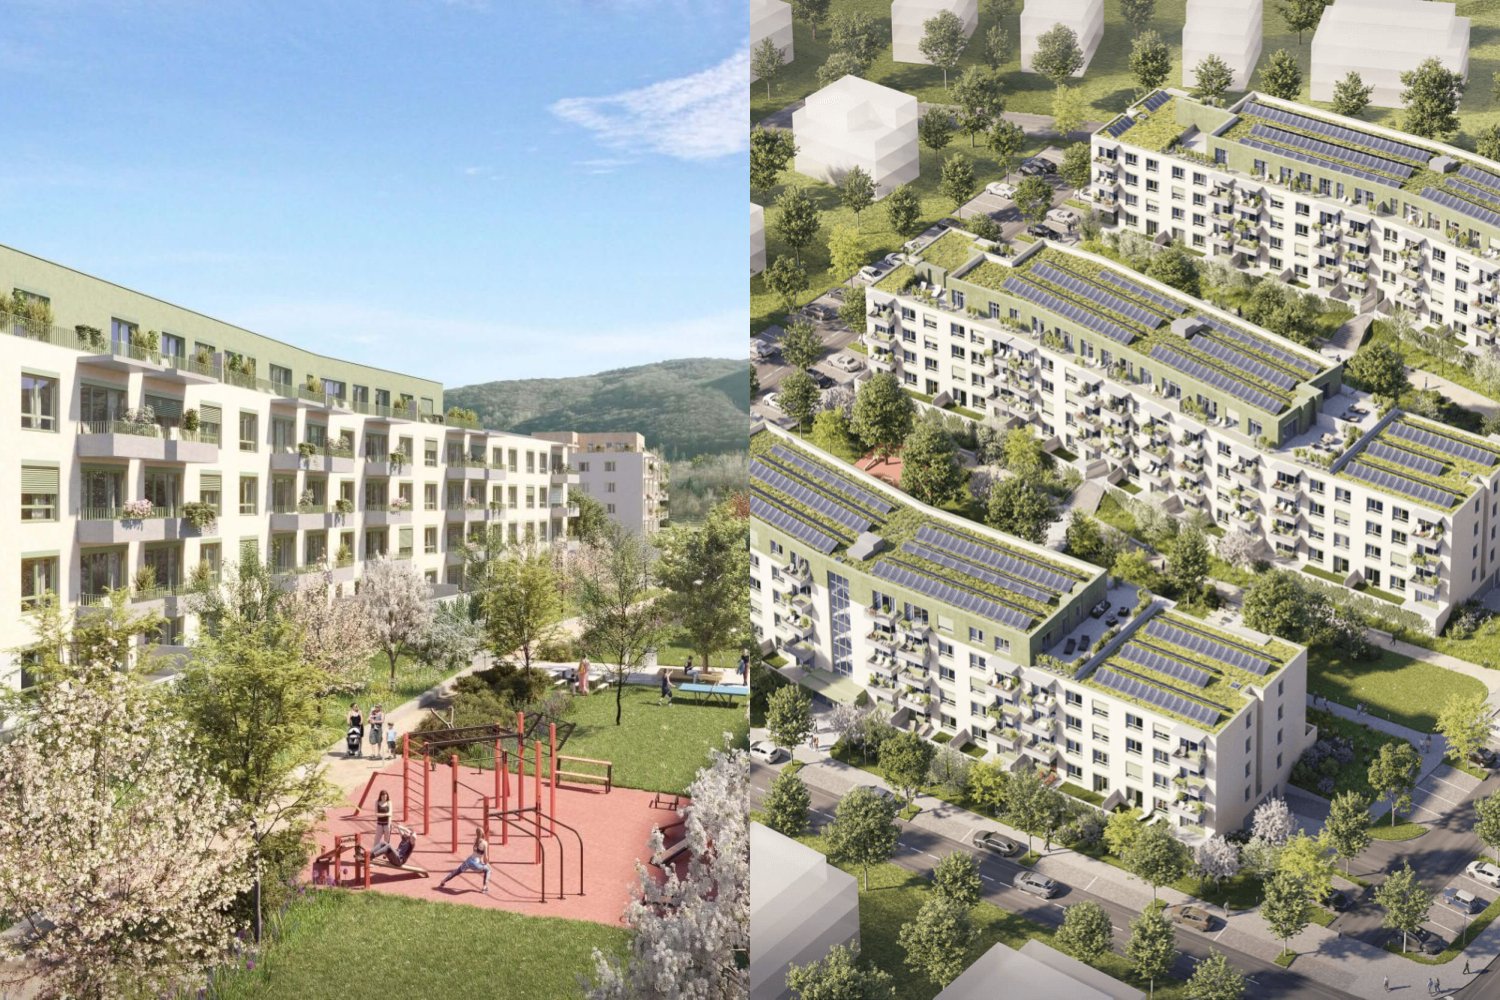 Dostupnejšie byty po bratislavsky. Rakyta čaká na posledné povolenie, prinesie expanziu Devínskej Novej Vsi